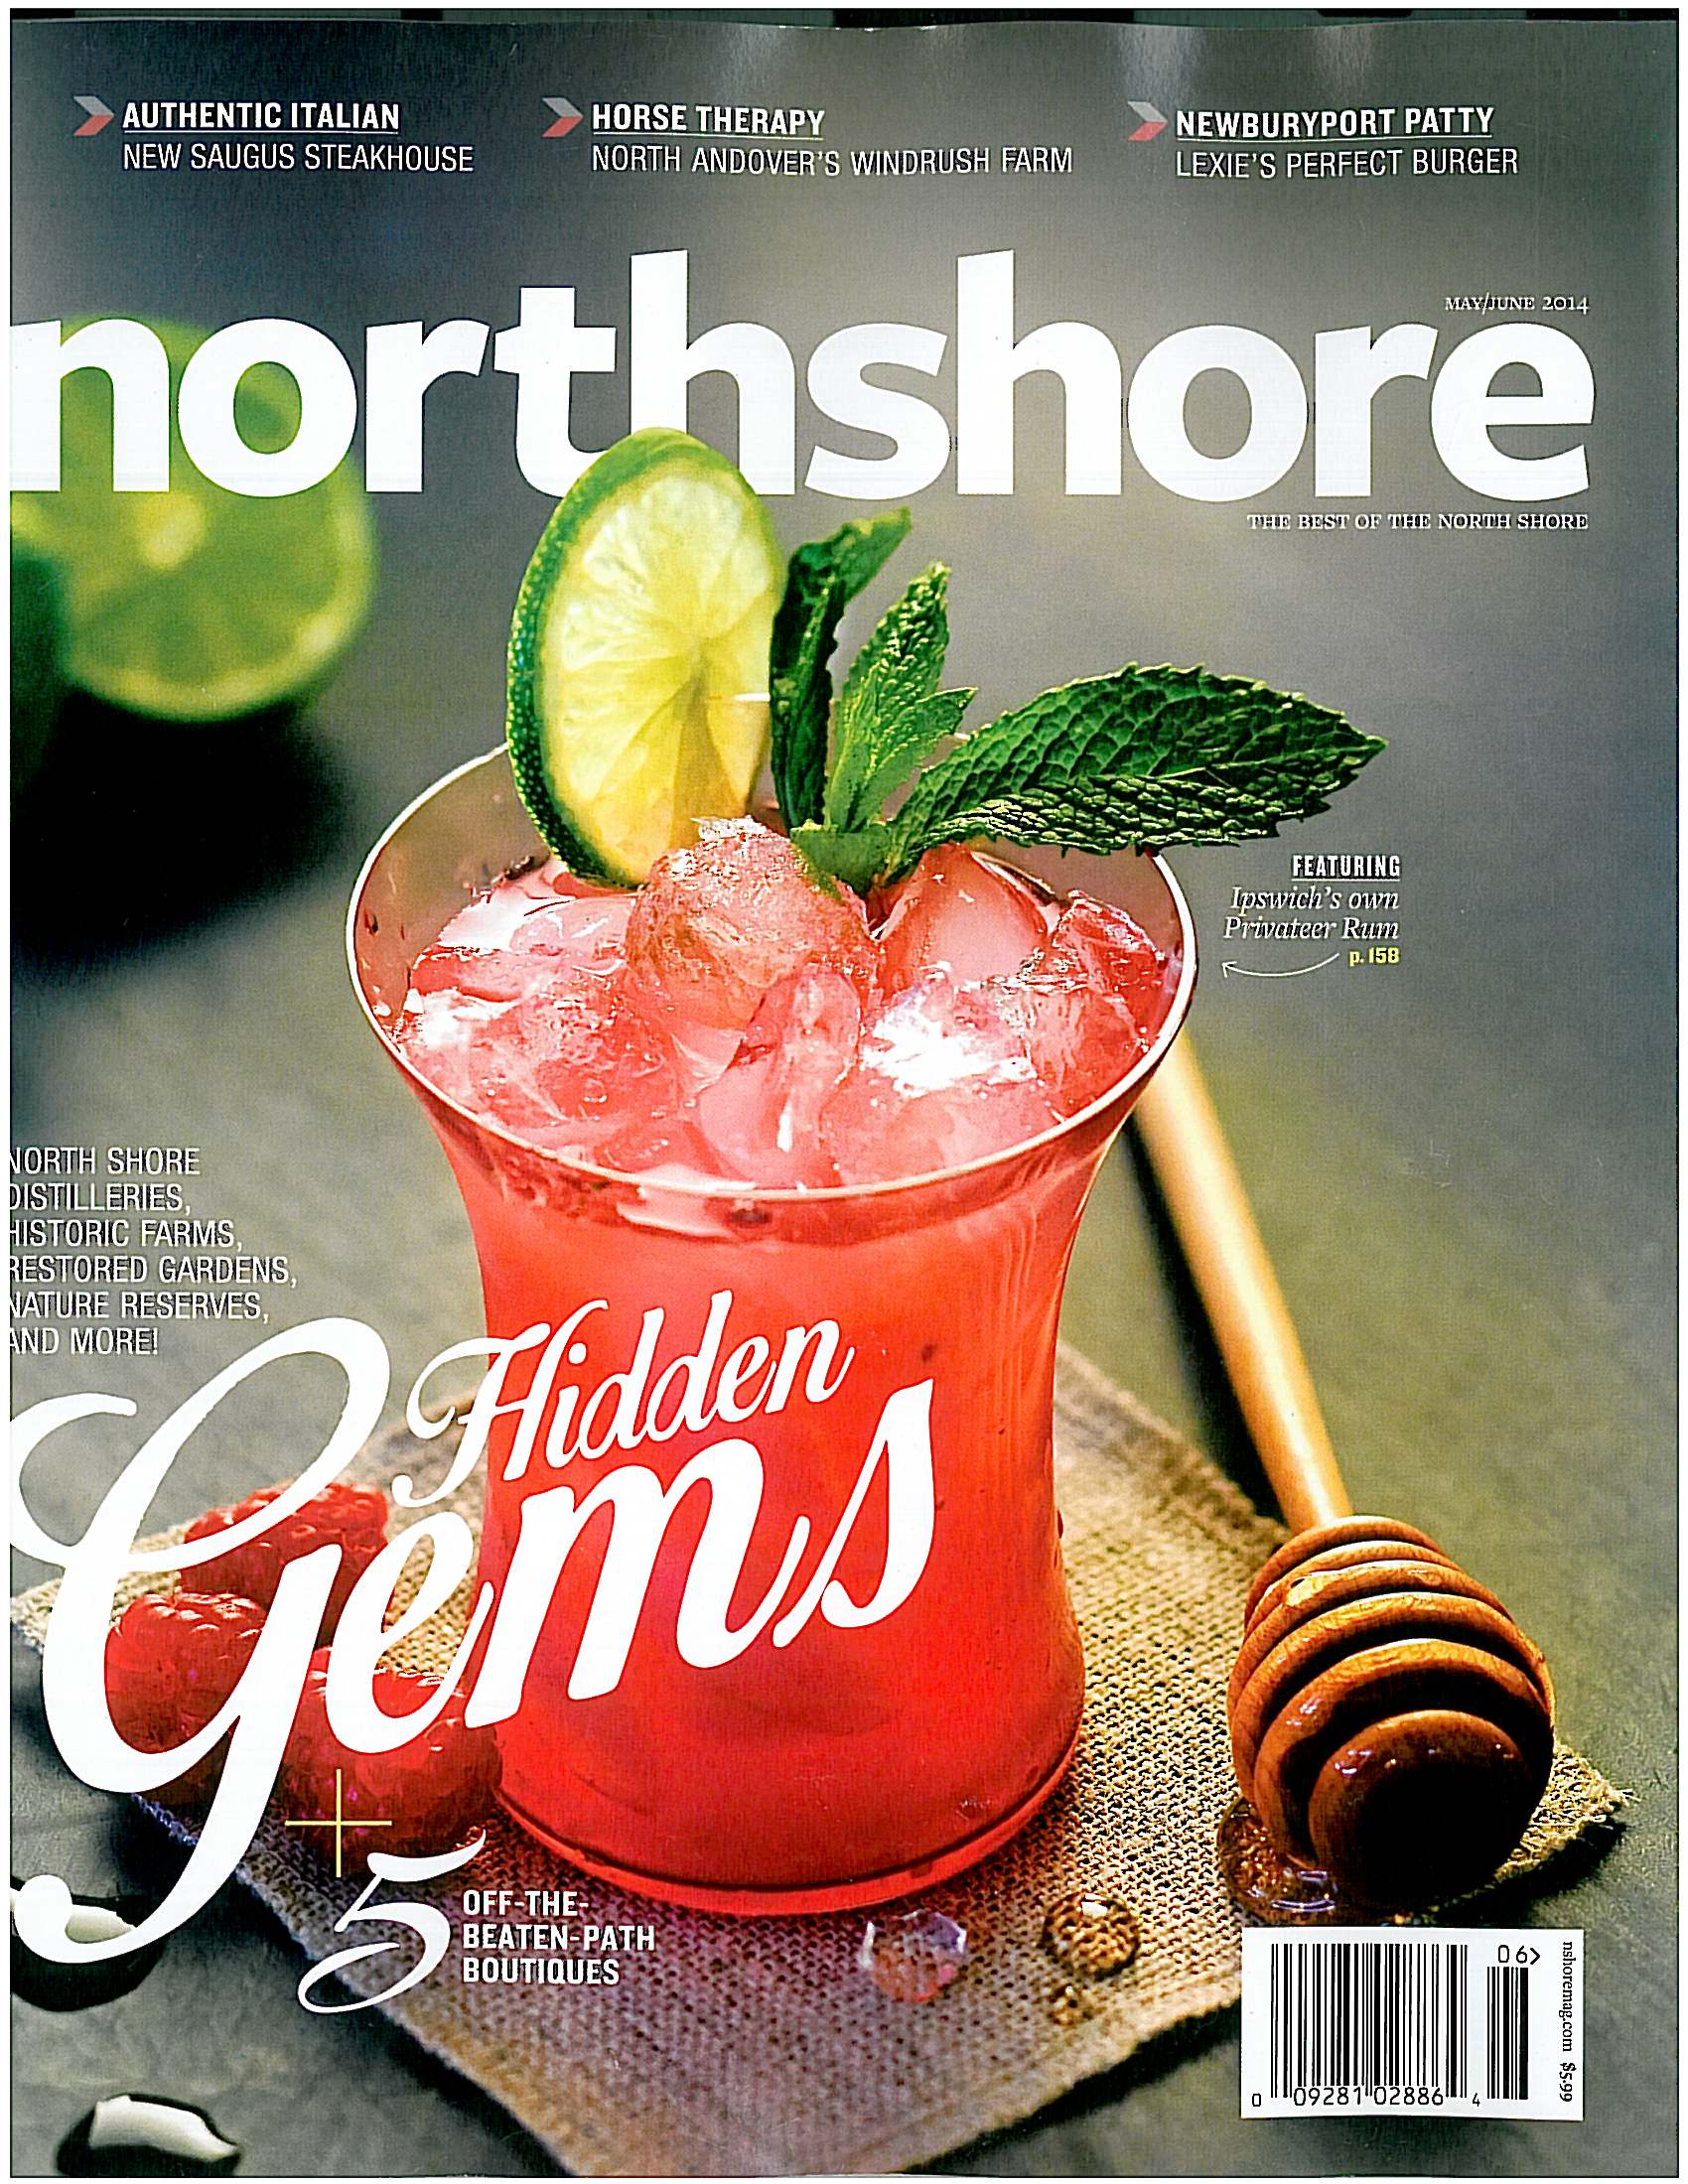 Windrush Farm in Northshore Magazine 2014